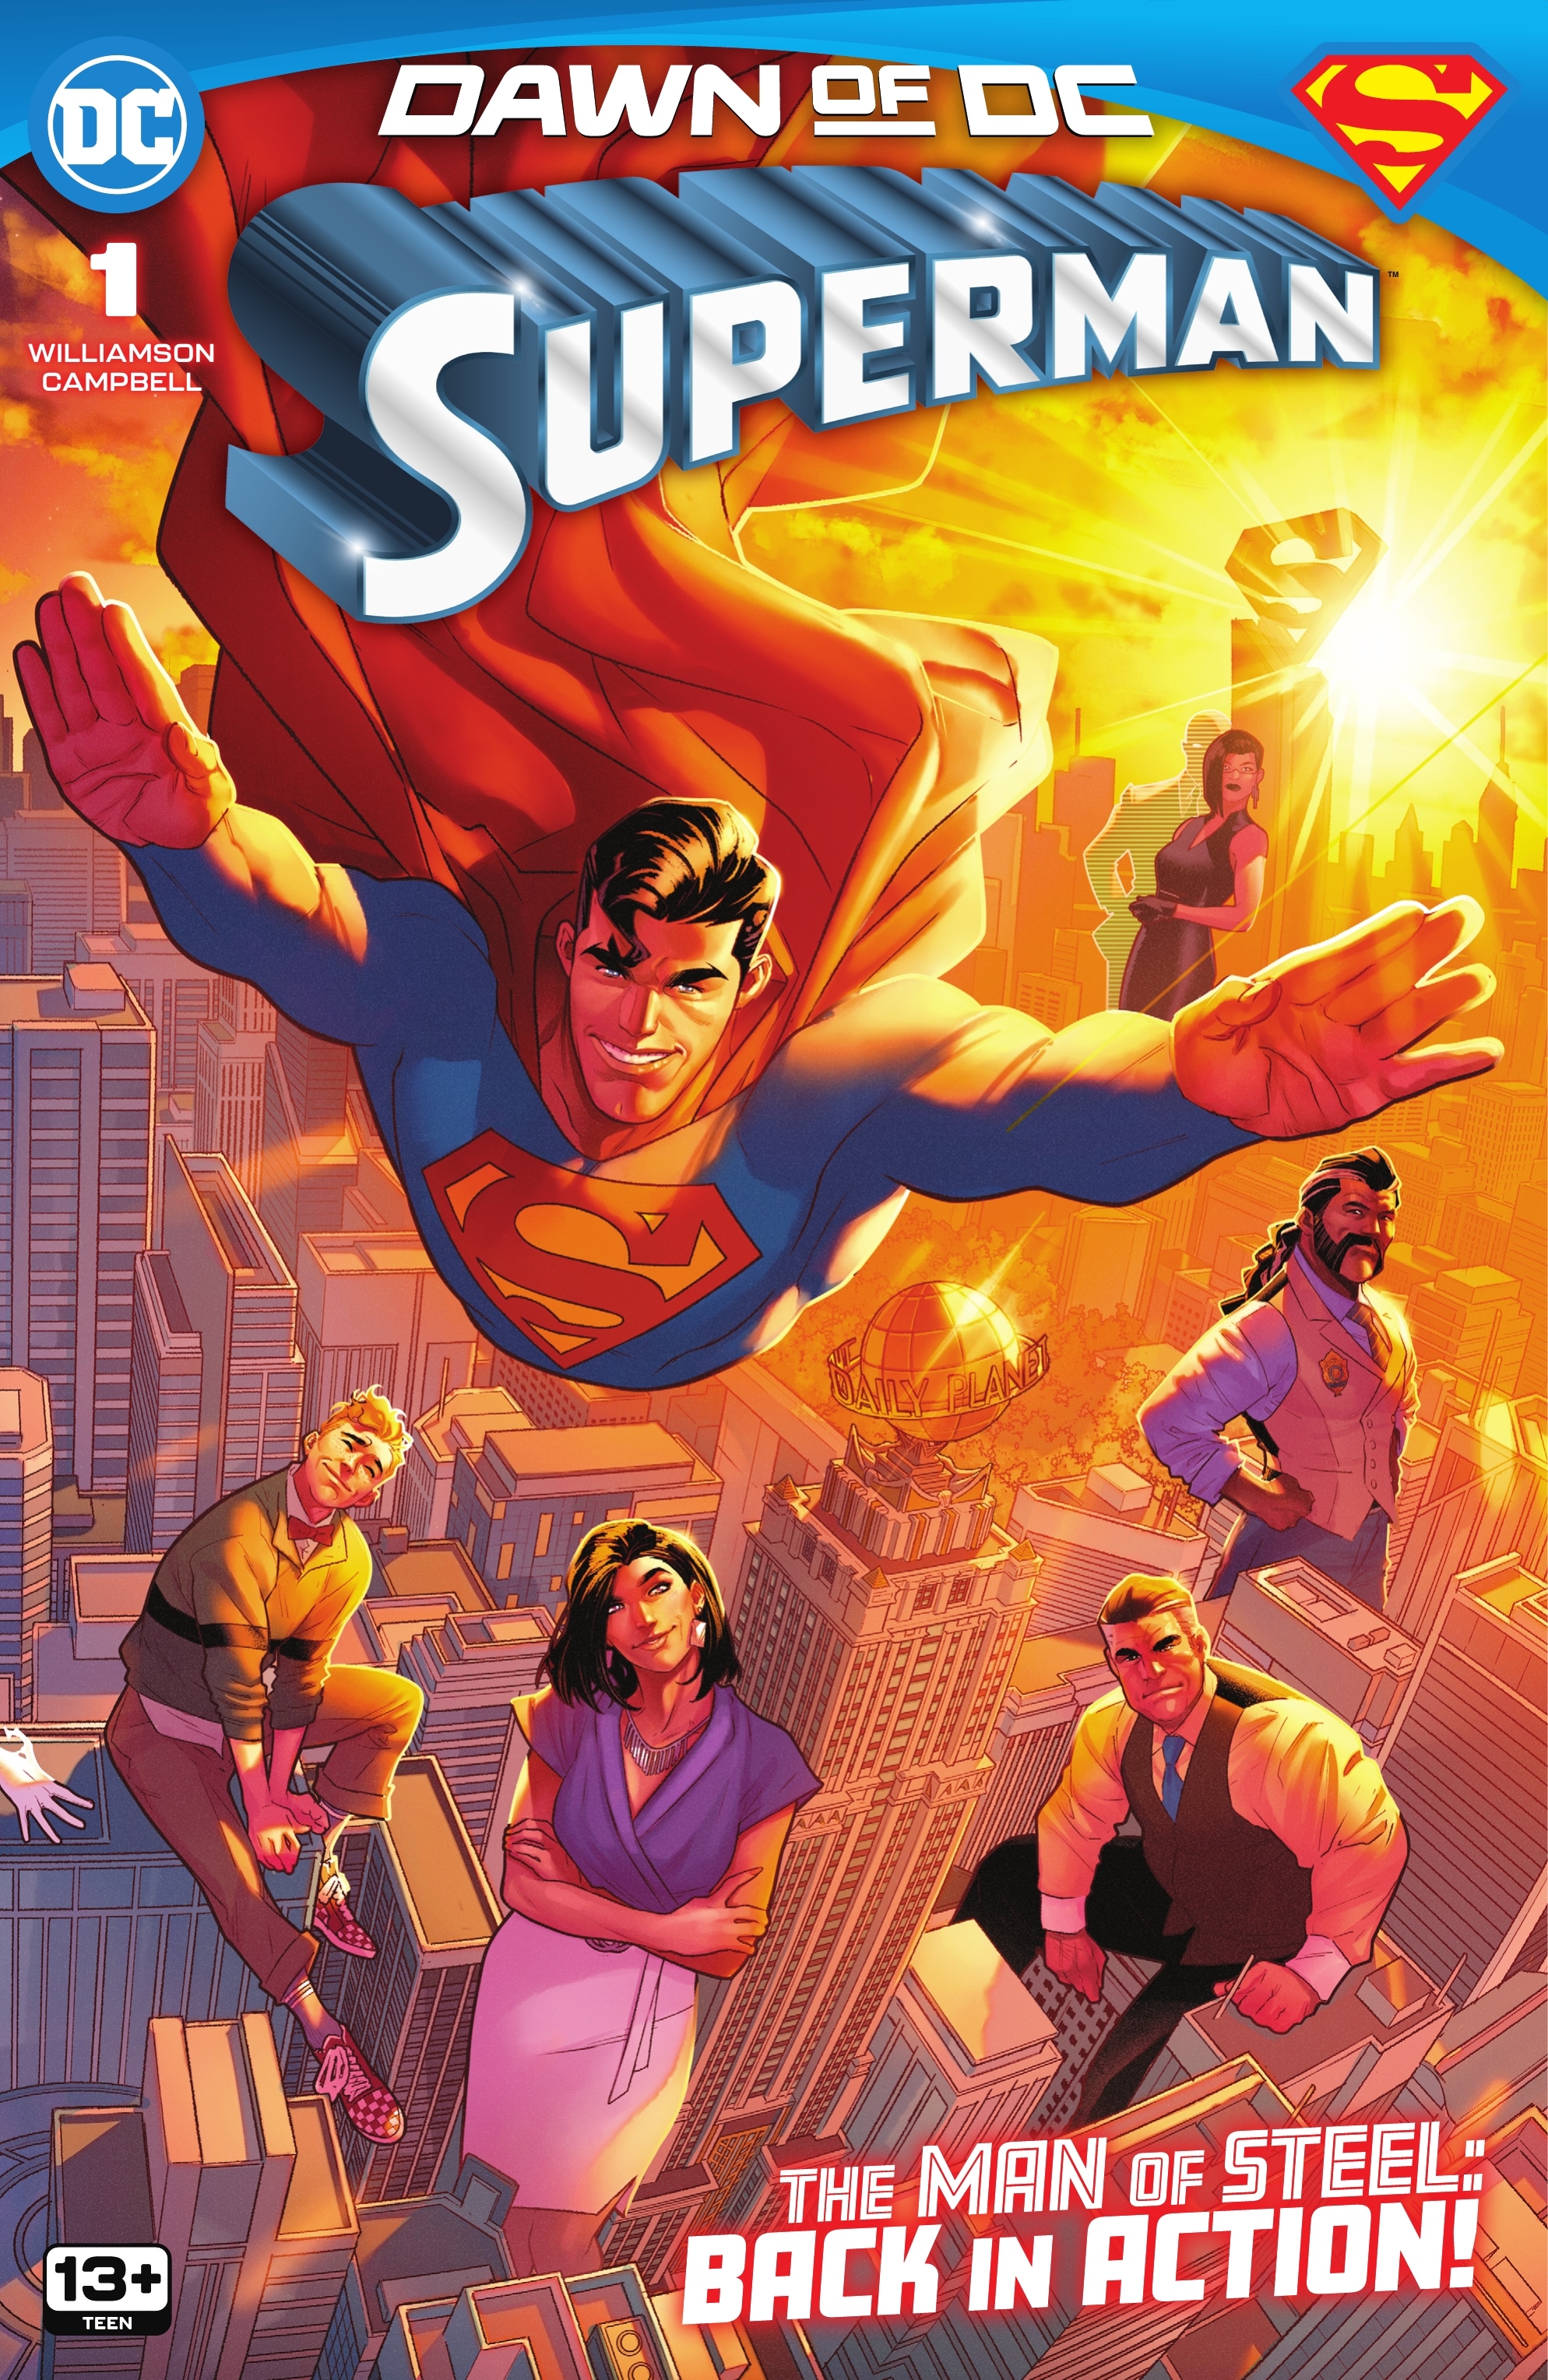 Read superman comics online